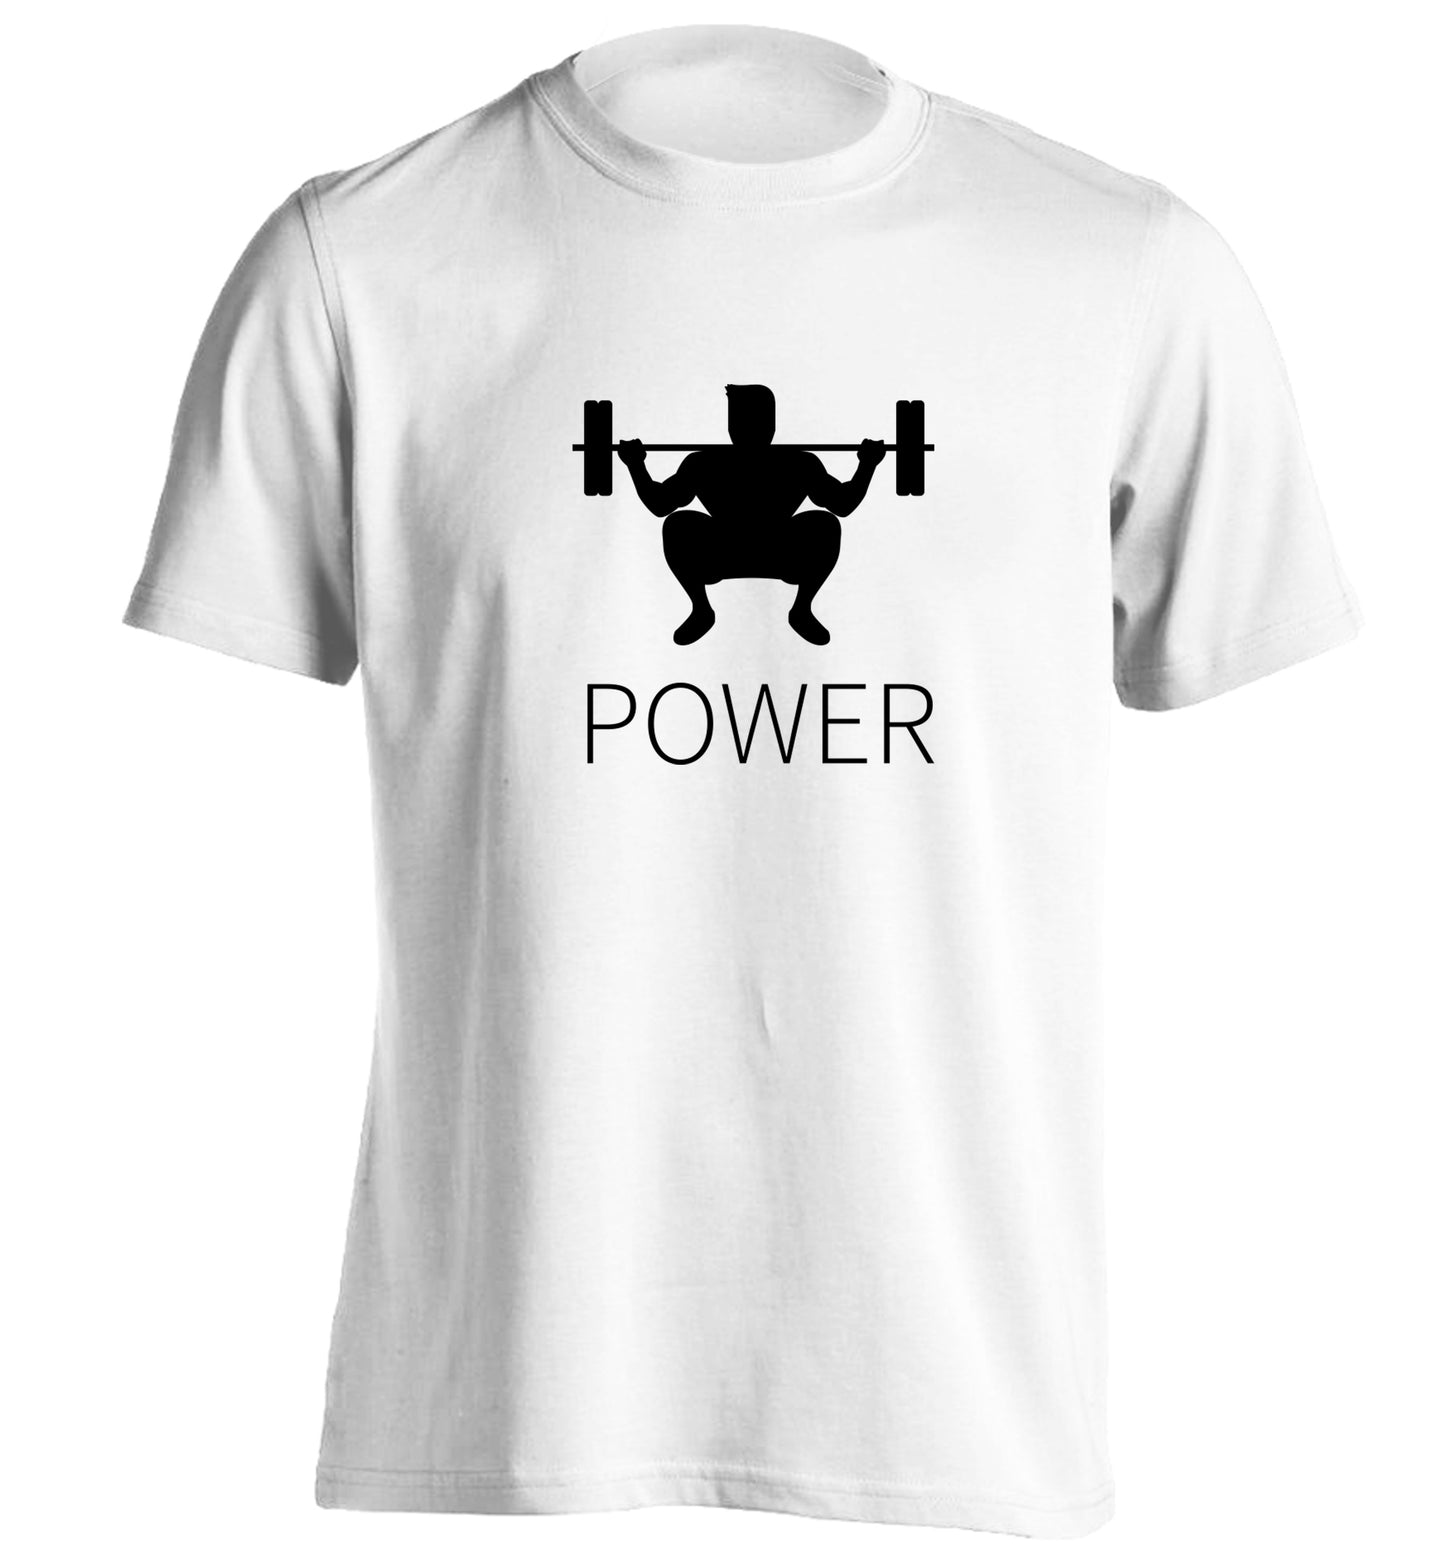 Lift power adults unisex white Tshirt 2XL